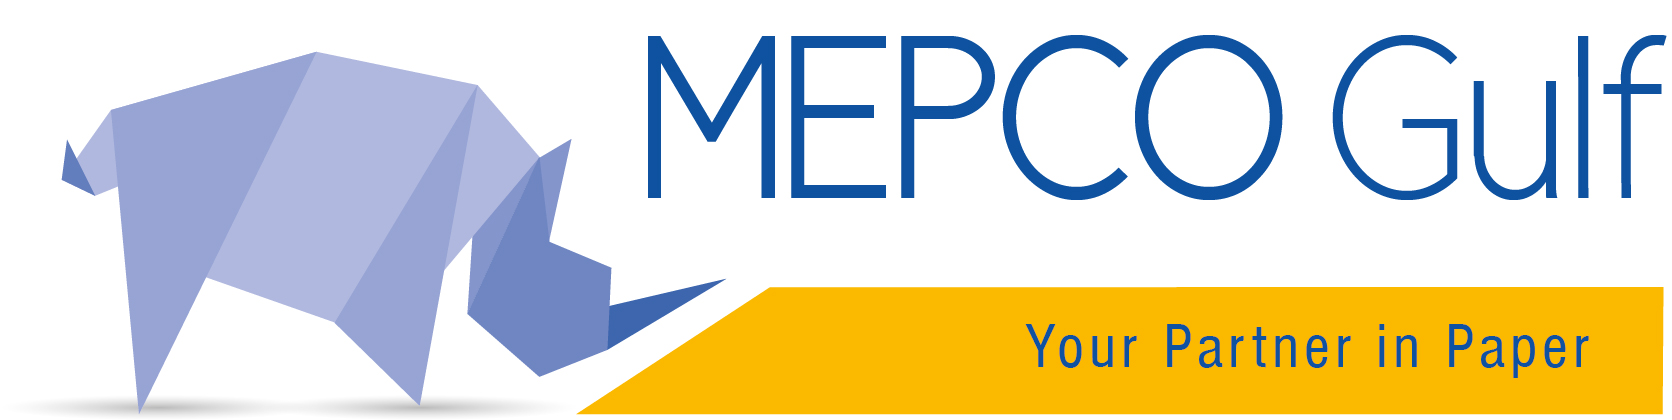 mepco gulf logo